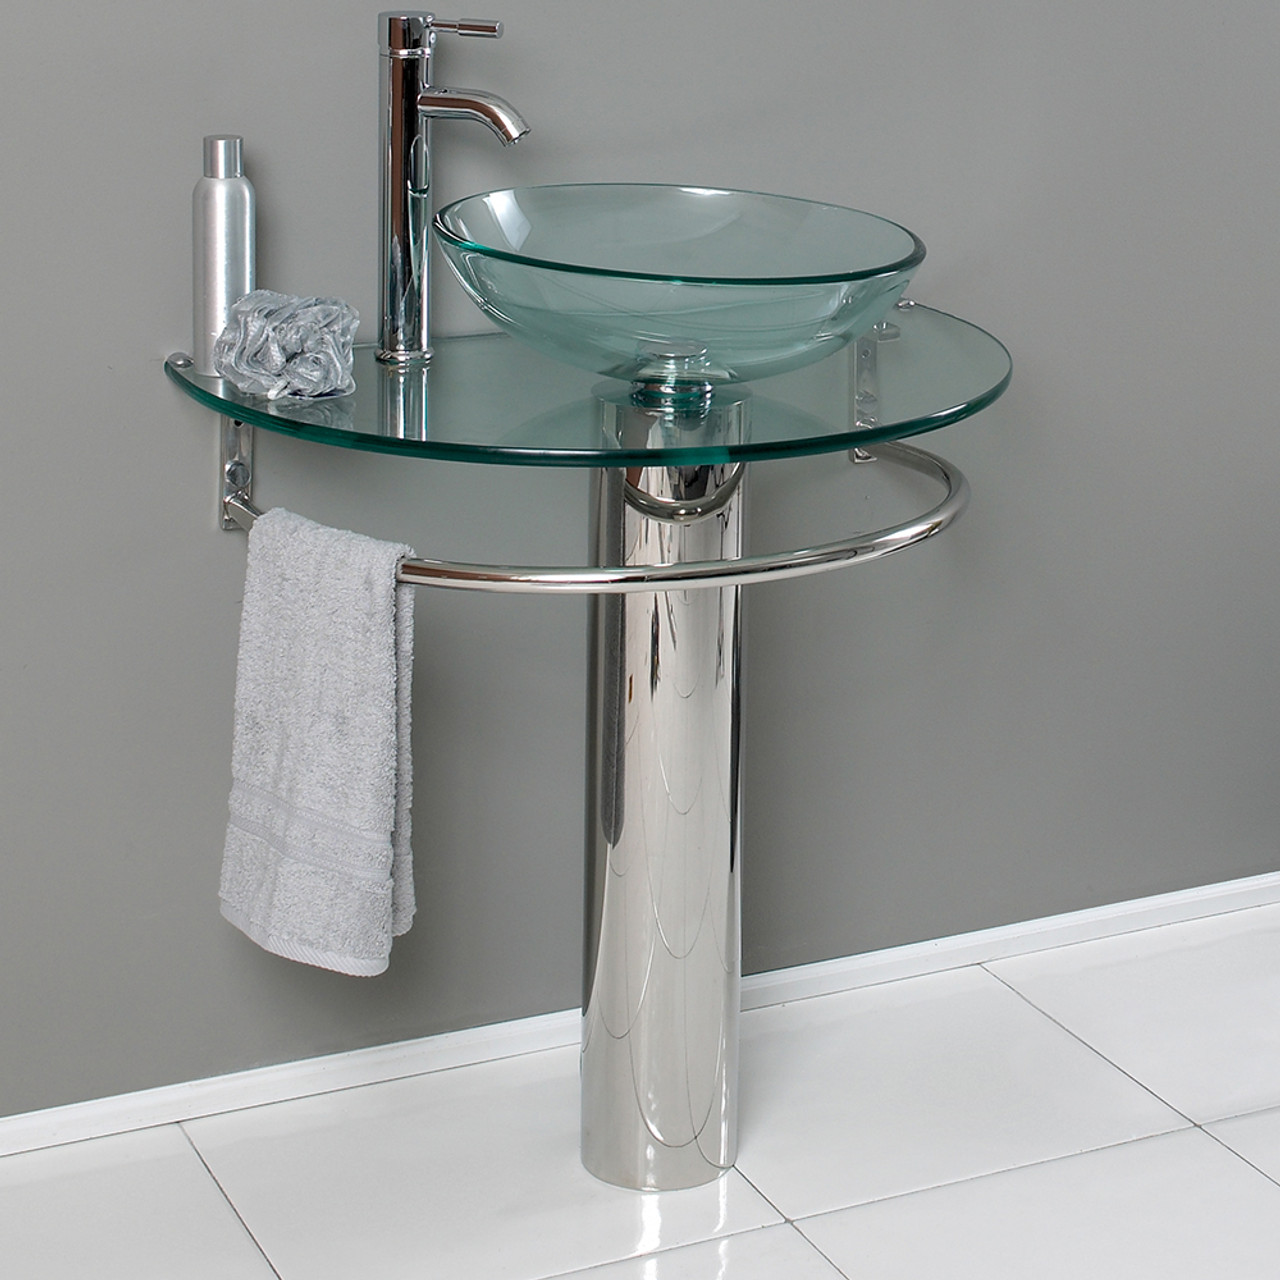 Pedestal Sinks With Towel Bar - Foter